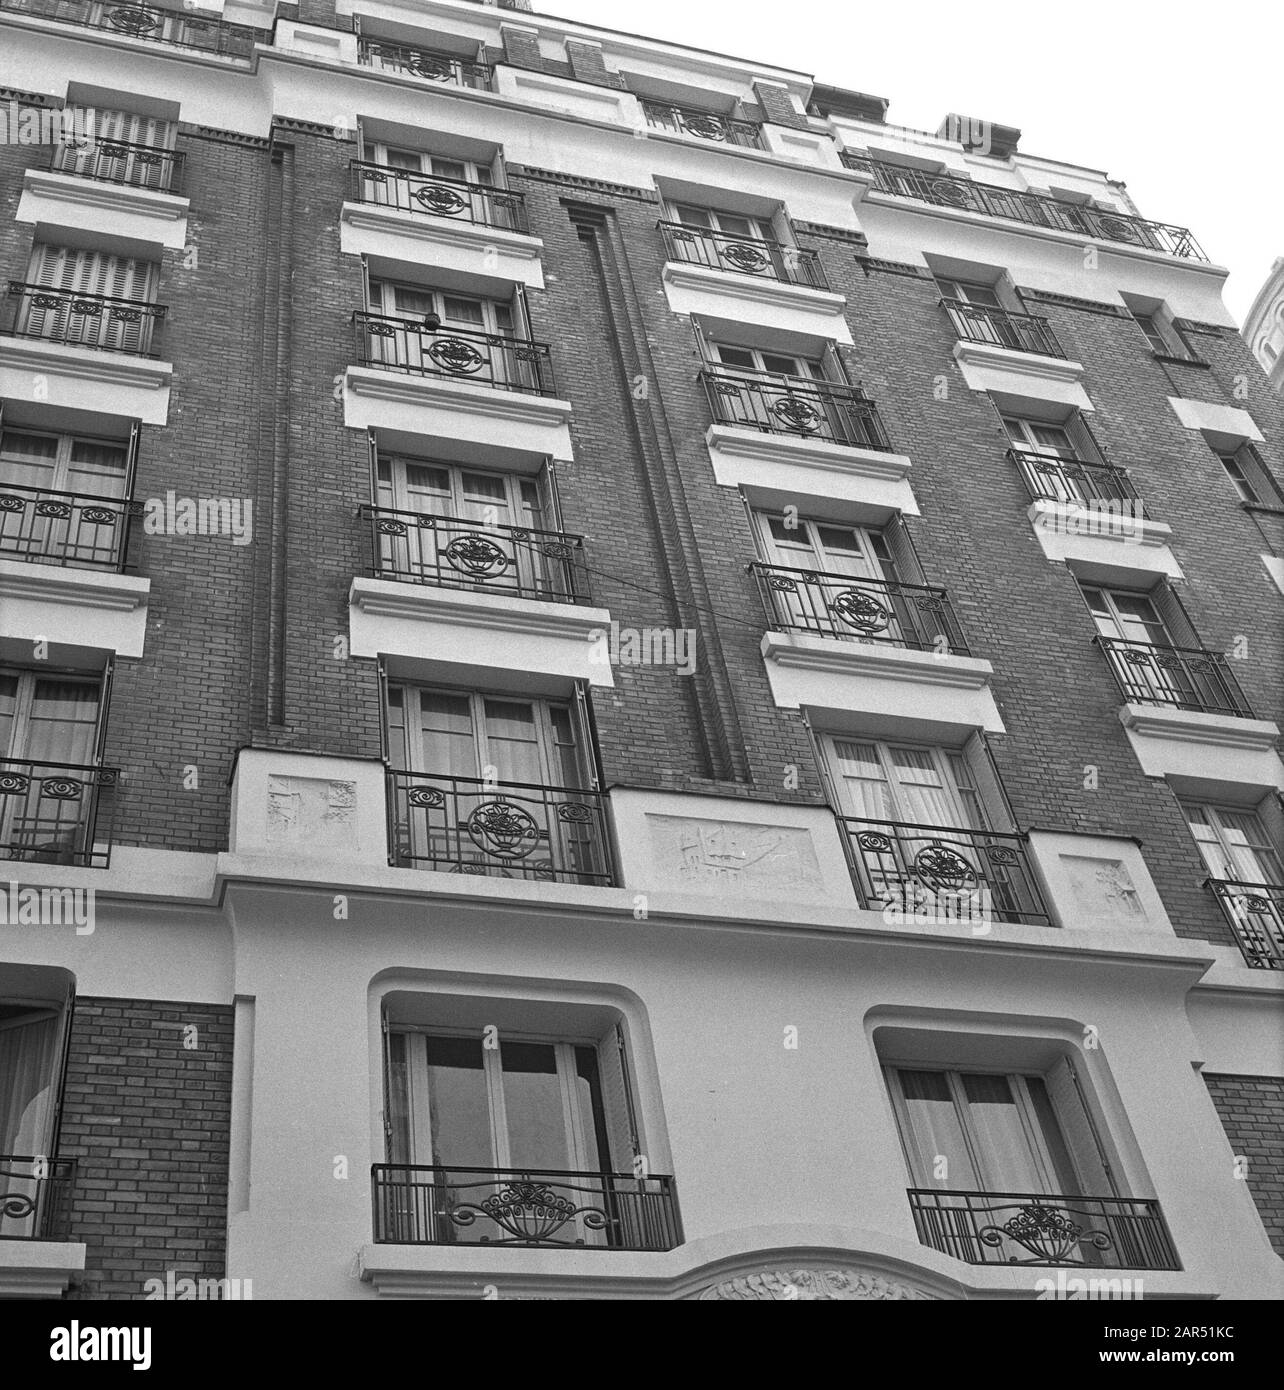 Pariser Bilder [la vita di strada di Parigi] Facciata con balconi francesi Data: 1965 luogo: Francia, Parigi Parole Chiave: Balconi, edifici, facciate Foto Stock